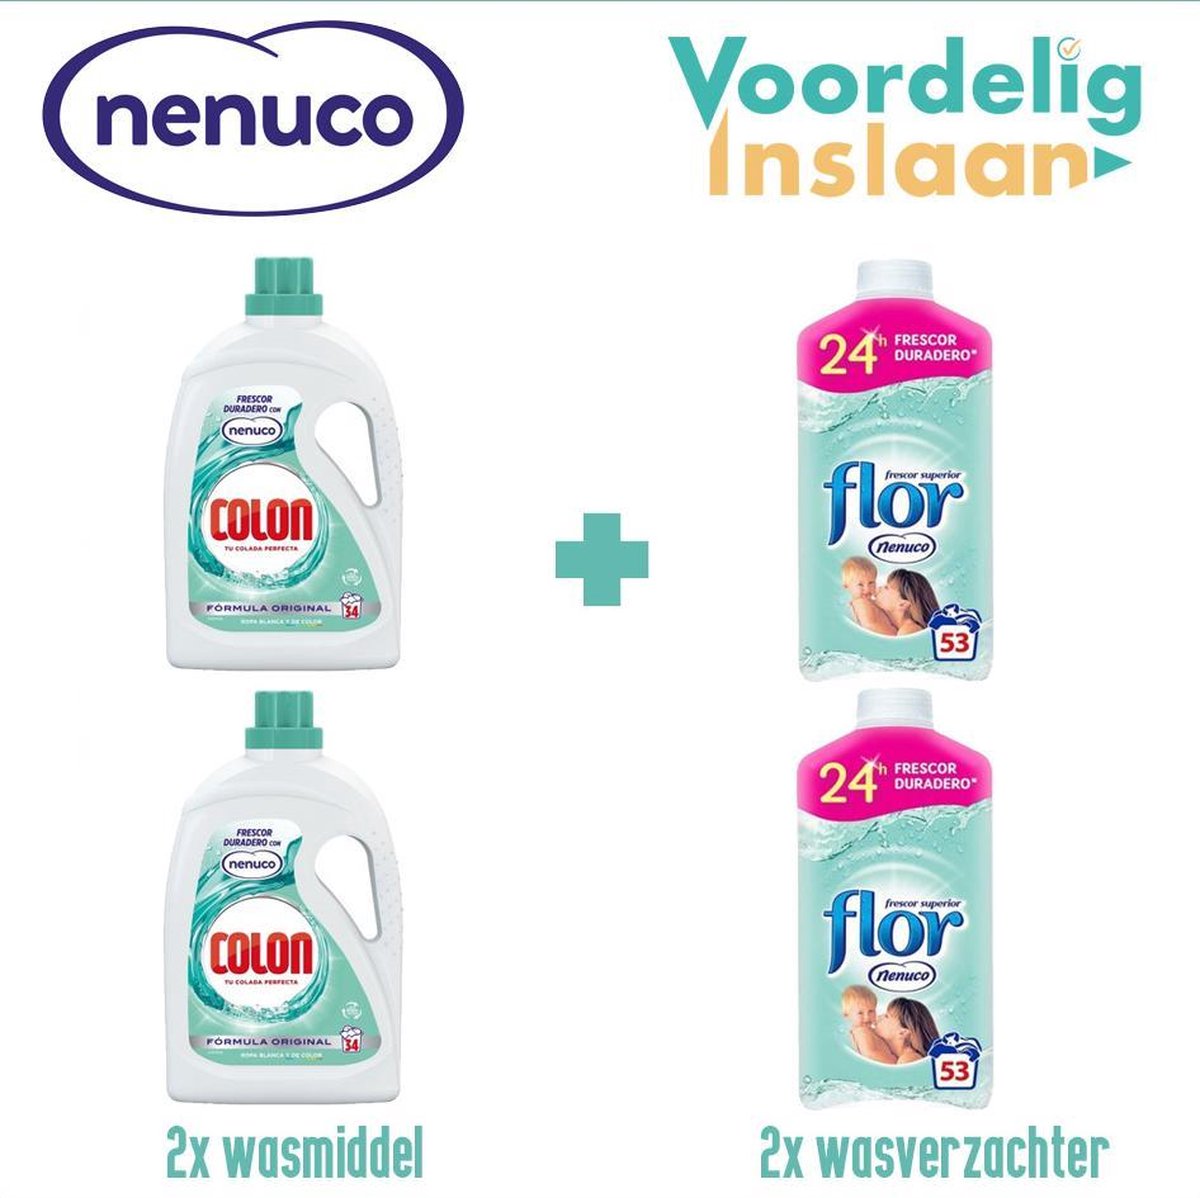 2x Nenuco Wasmiddel + 2x Nenuco Wasverzachter - Combipakket 2x wasmiddel 2x wasverzachter - Nenuco wasmiddelenpakket 4 flessen